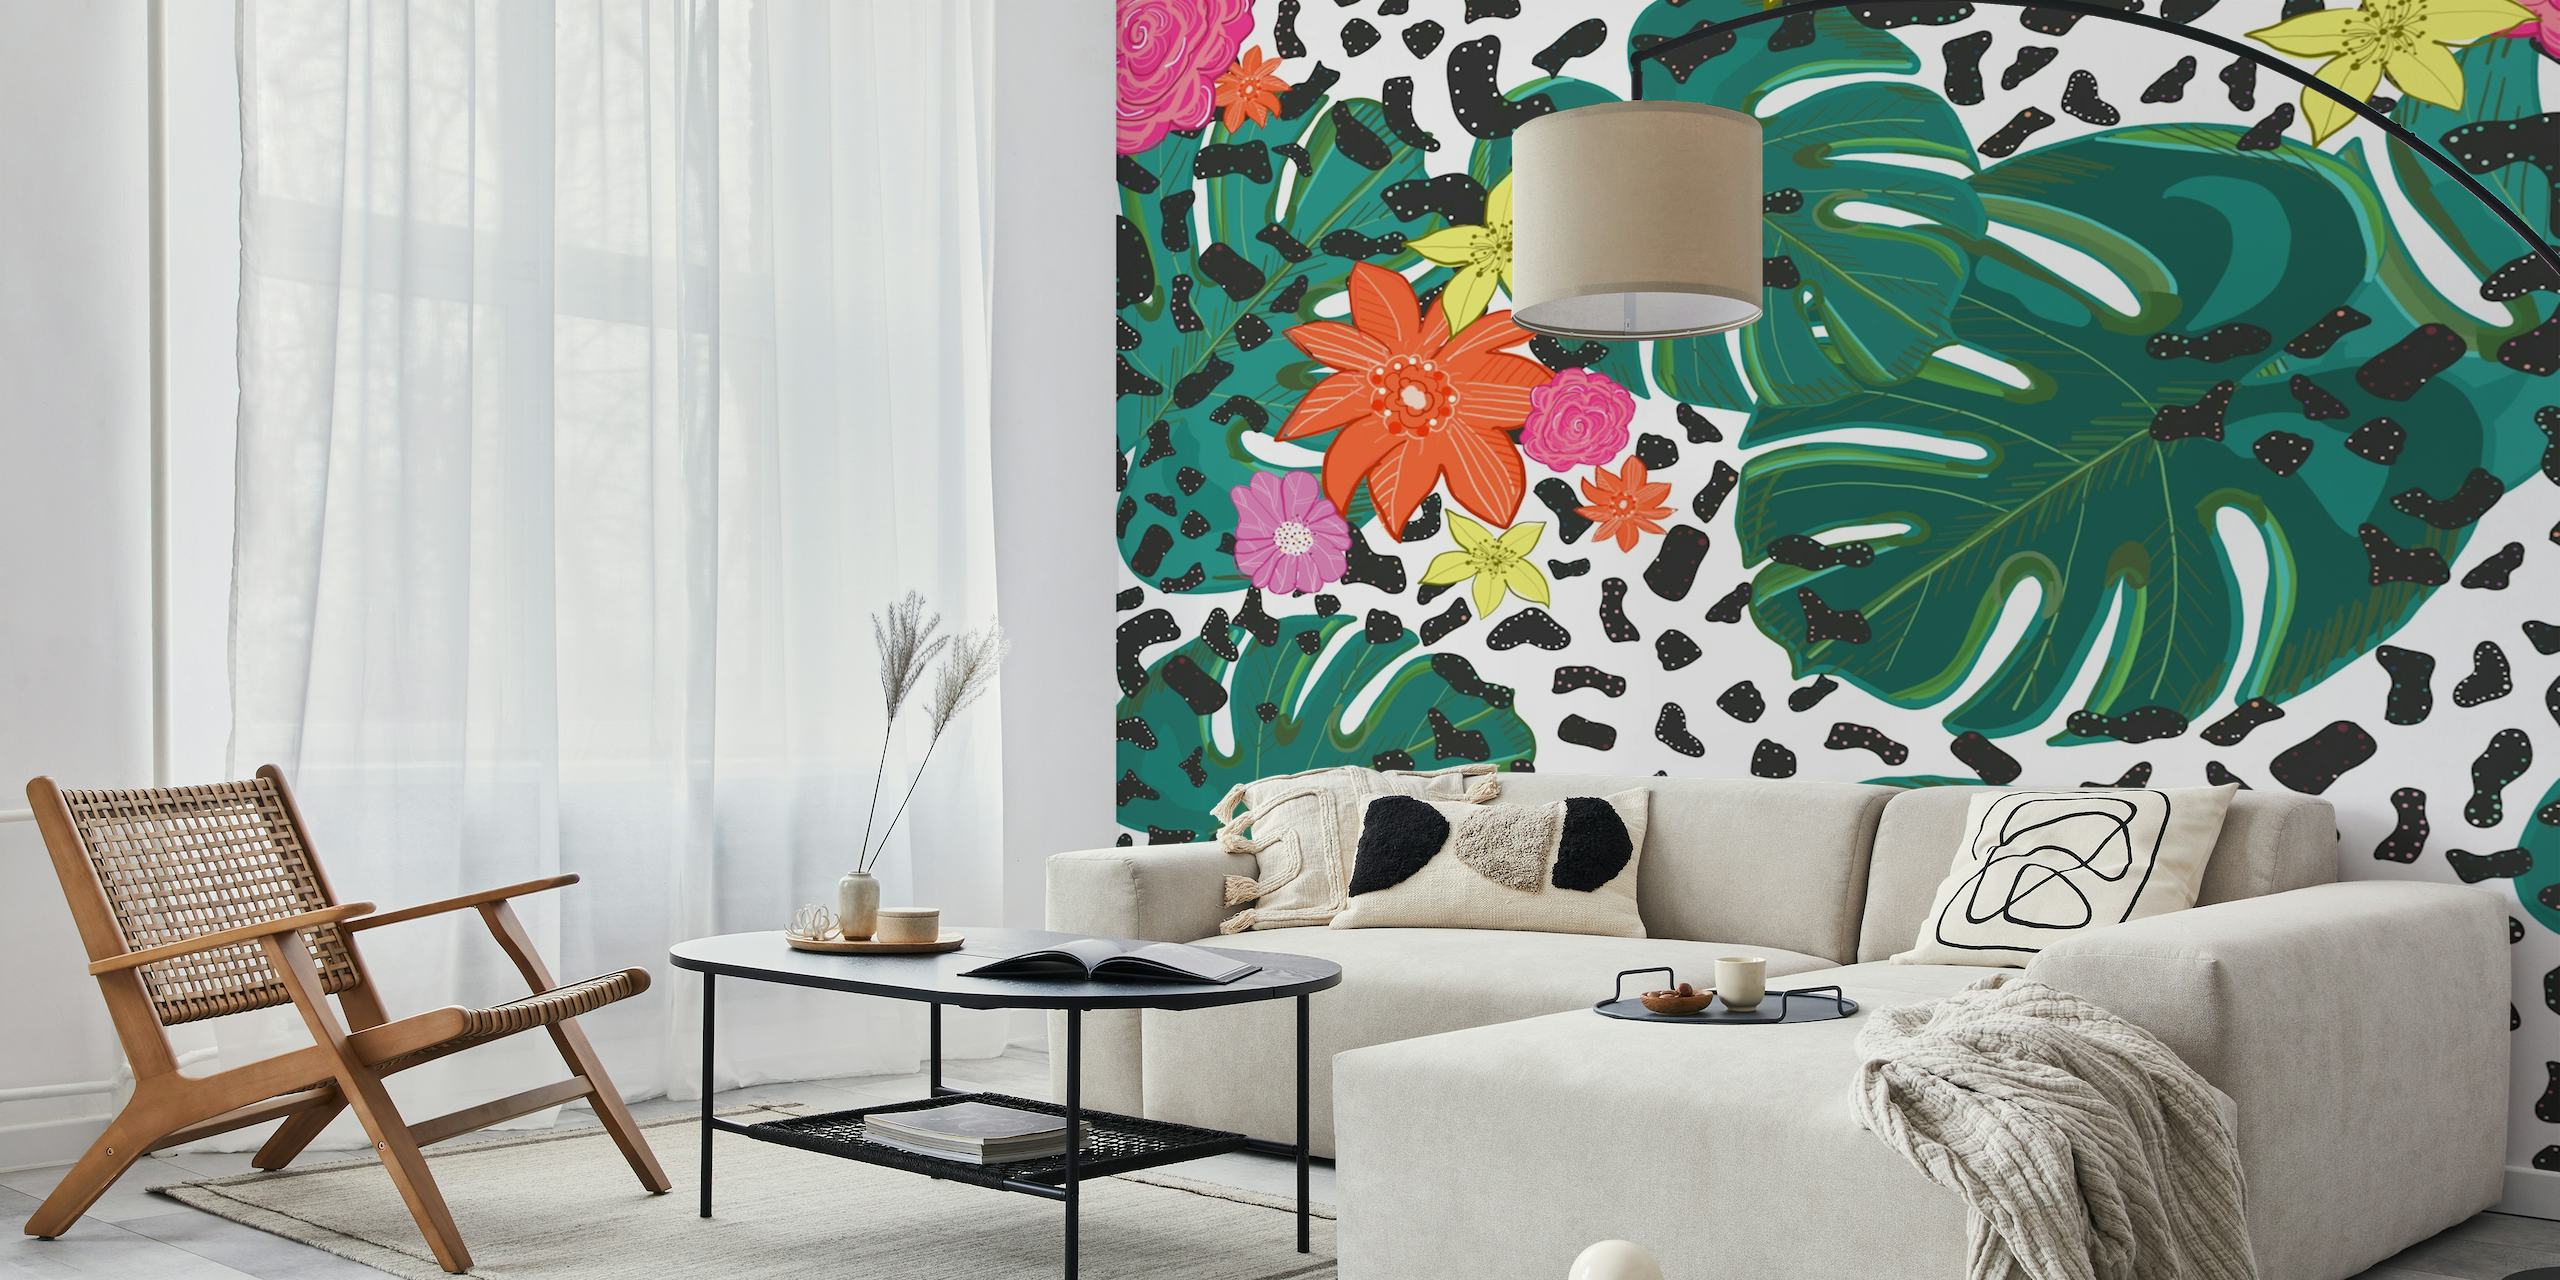 Papier peint tropical coloré avec des feuilles de monstera, des fleurs aux couleurs vives et des taches de léopard